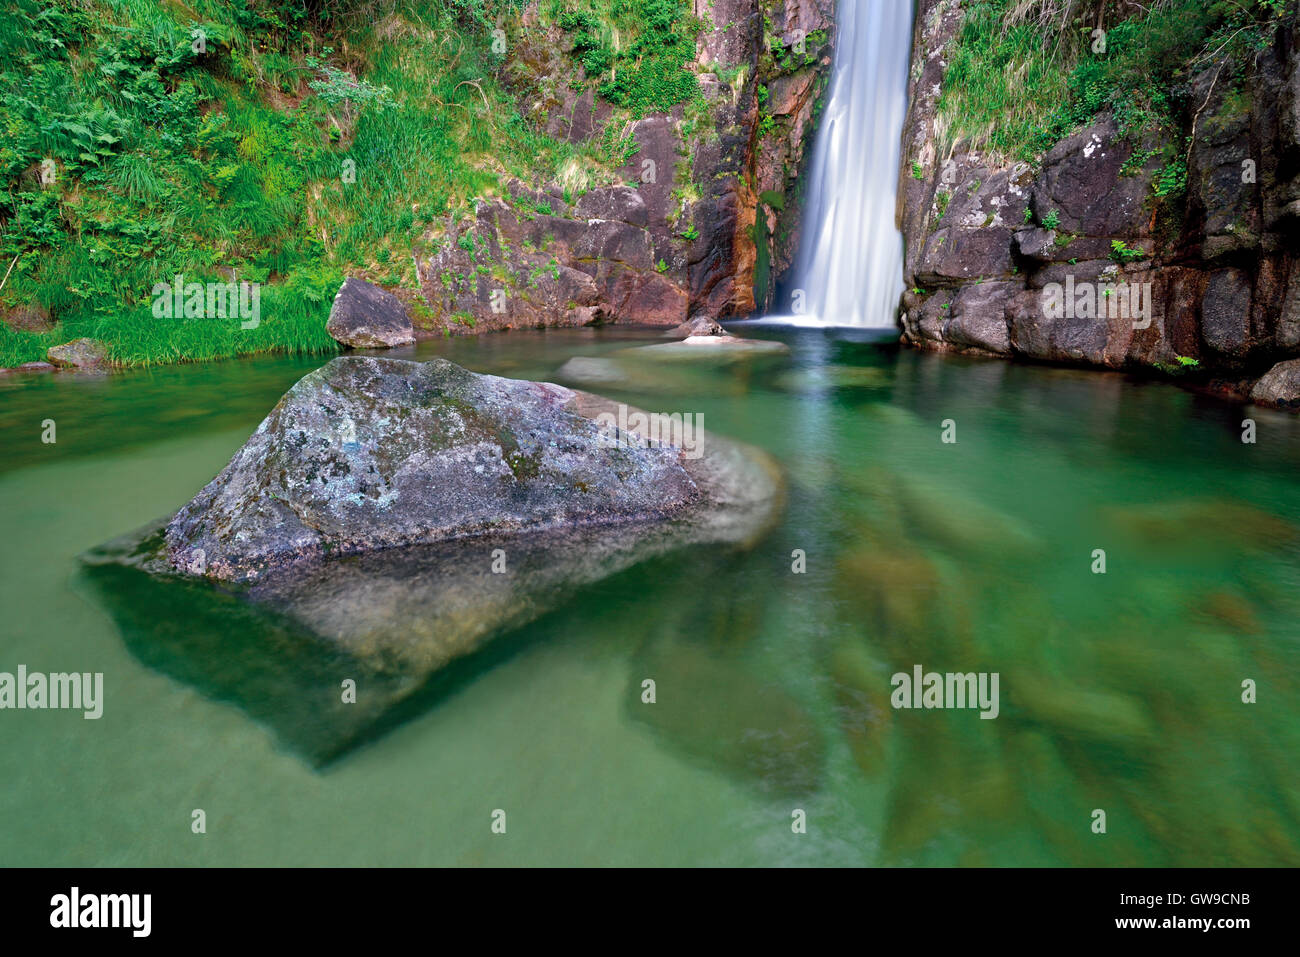 Portugal : Cascade avec piscine naturelle et énorme rocher dans l'eau transparente Banque D'Images